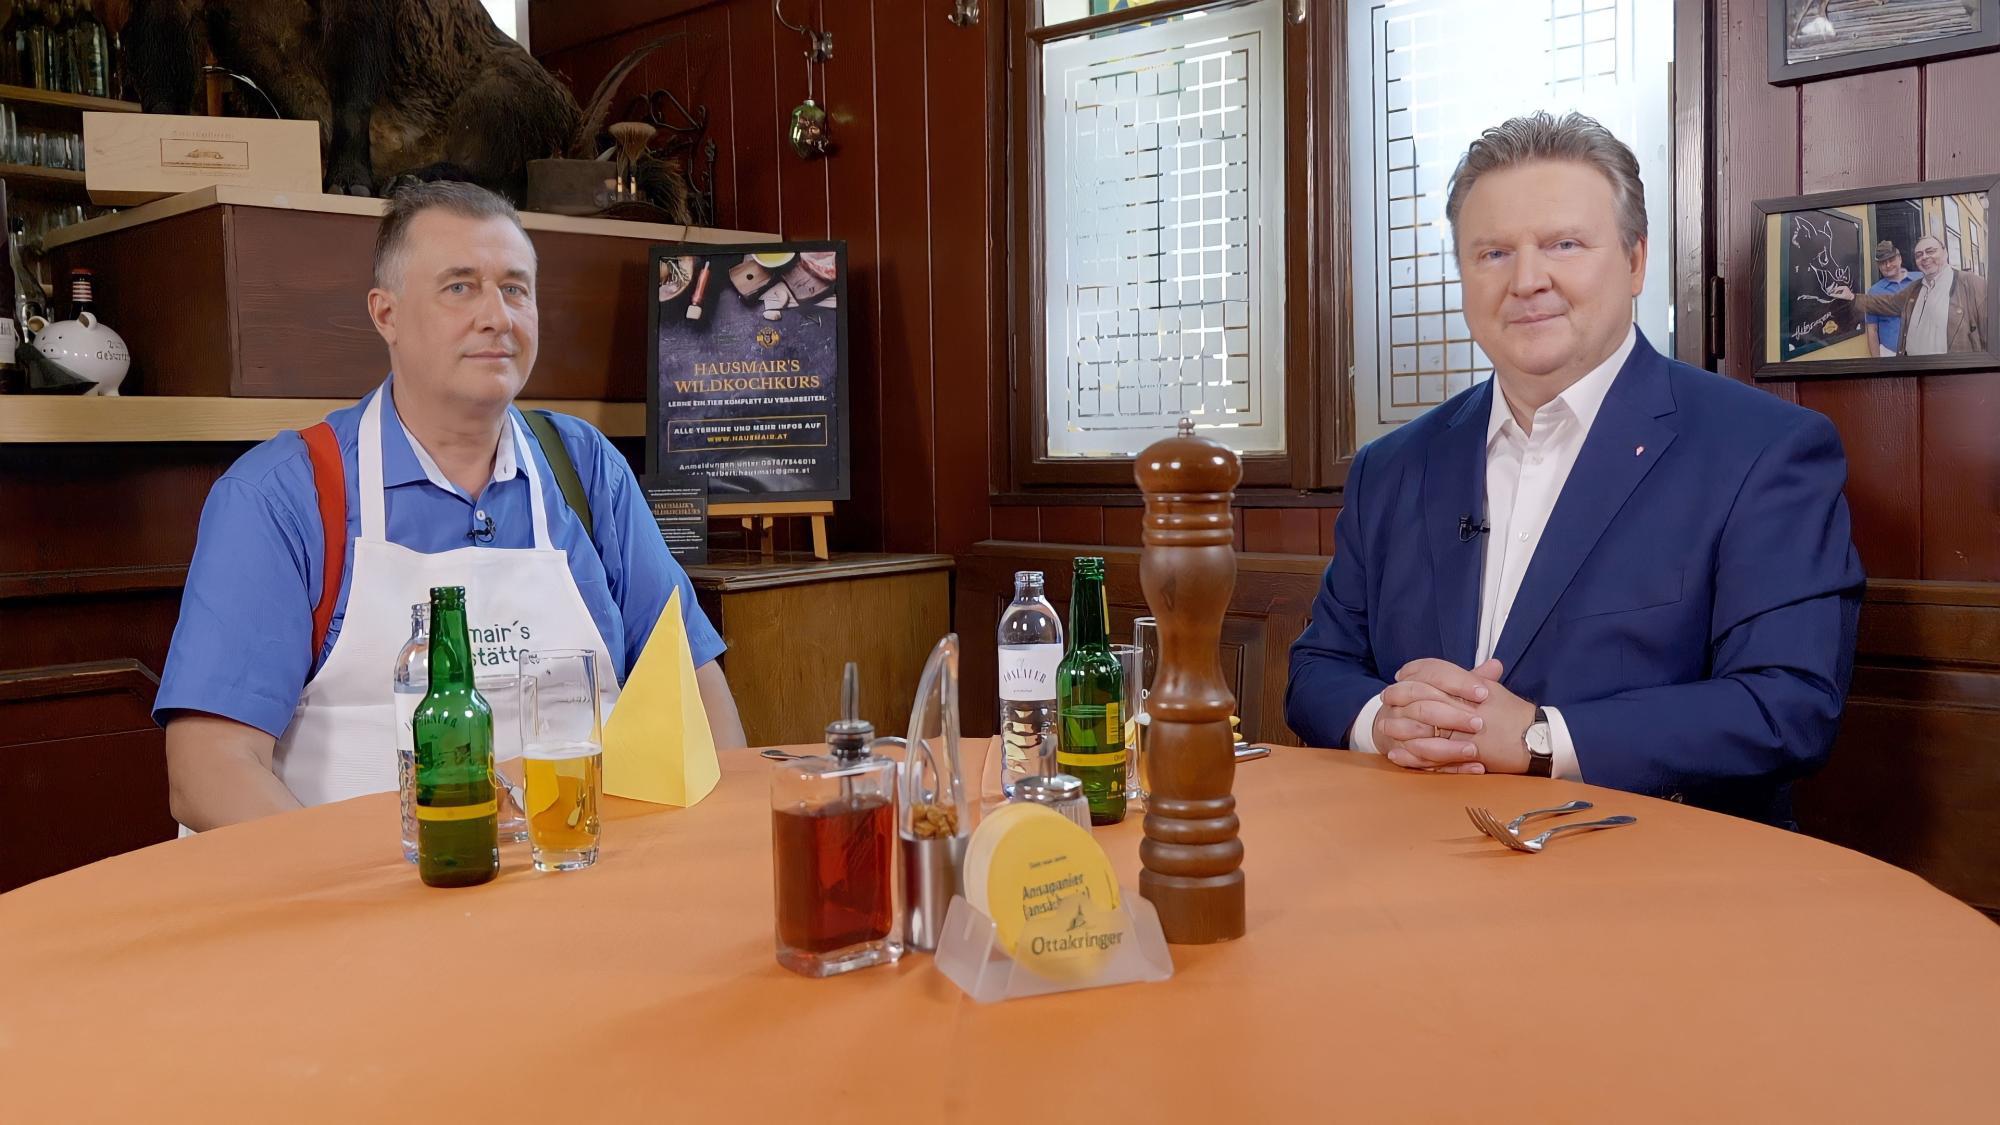 Kochen in harten Zeiten: Wiens Bürgermeister im Fernsehen